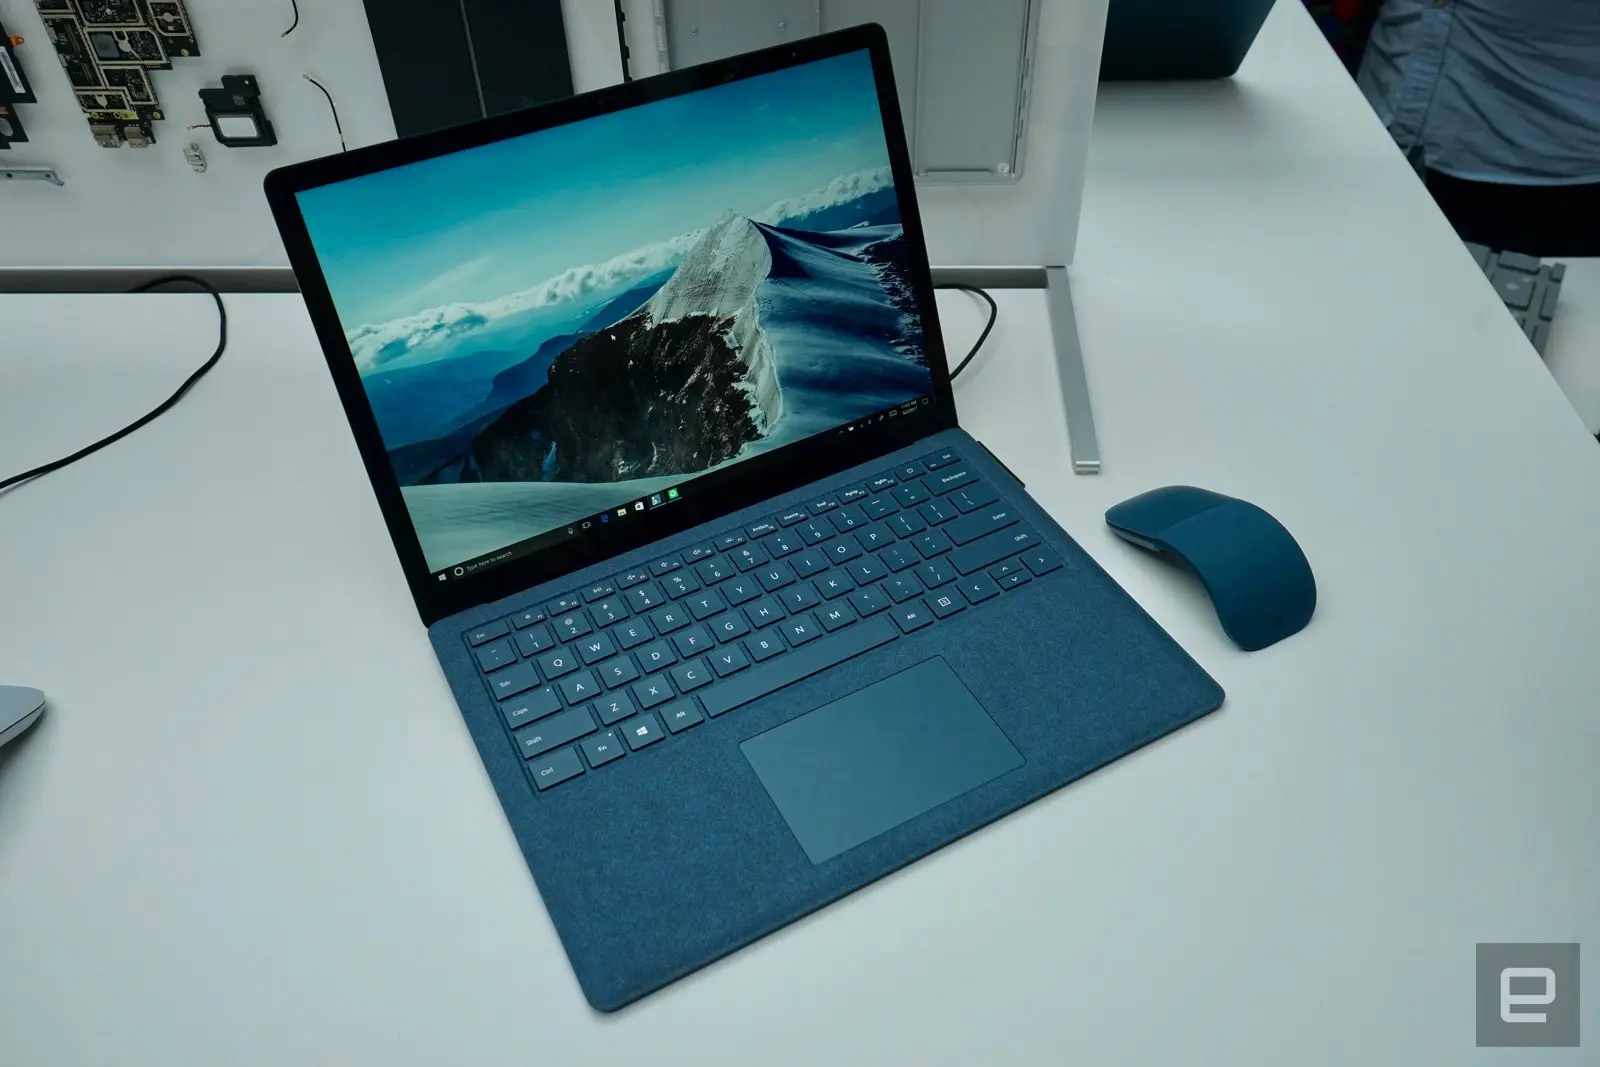 Surface Laptop presentada por Microsoft con Windows 10 S (9 USD)